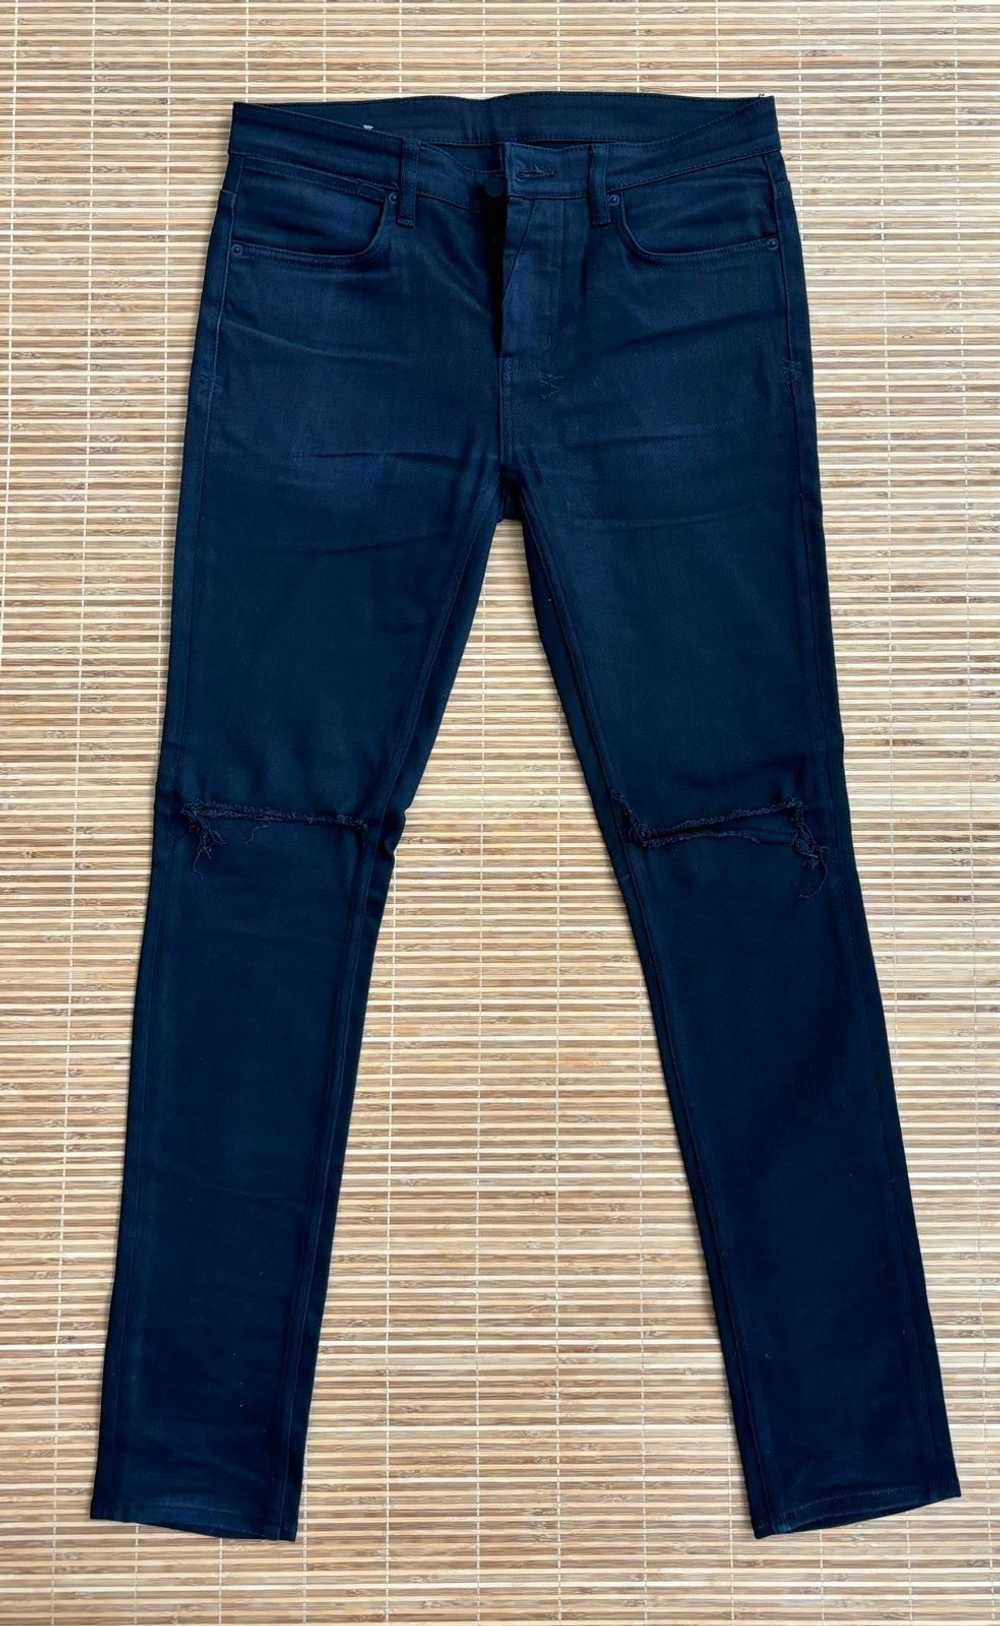 Ksubi Ksubi Van Winkle Skinny Jeans - image 1